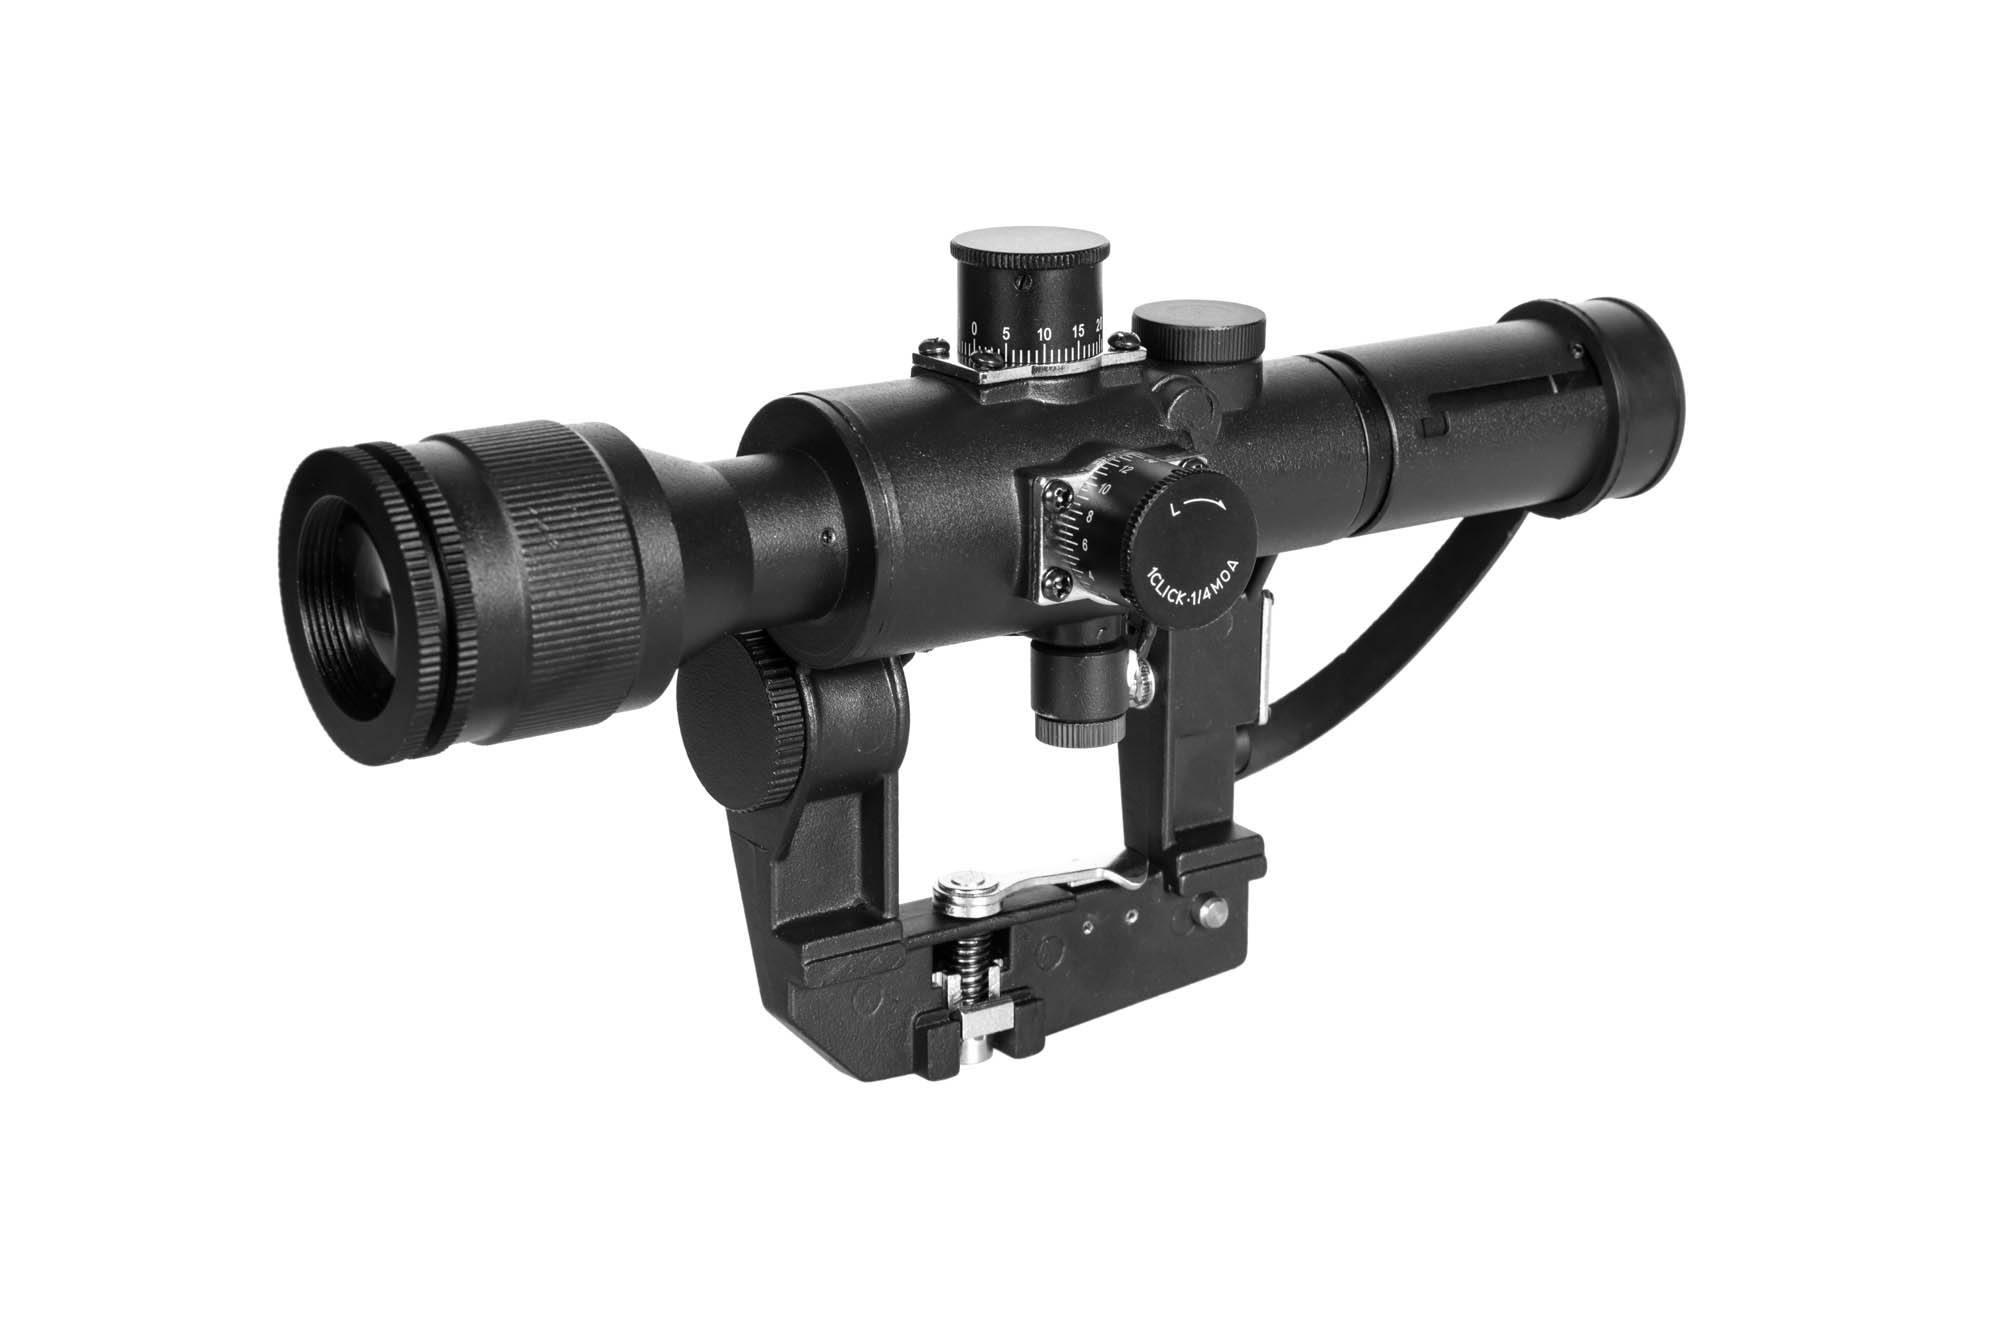 JJ Airsoft 4 × 24 SVD Sniper PSO-1 Lunette - BK